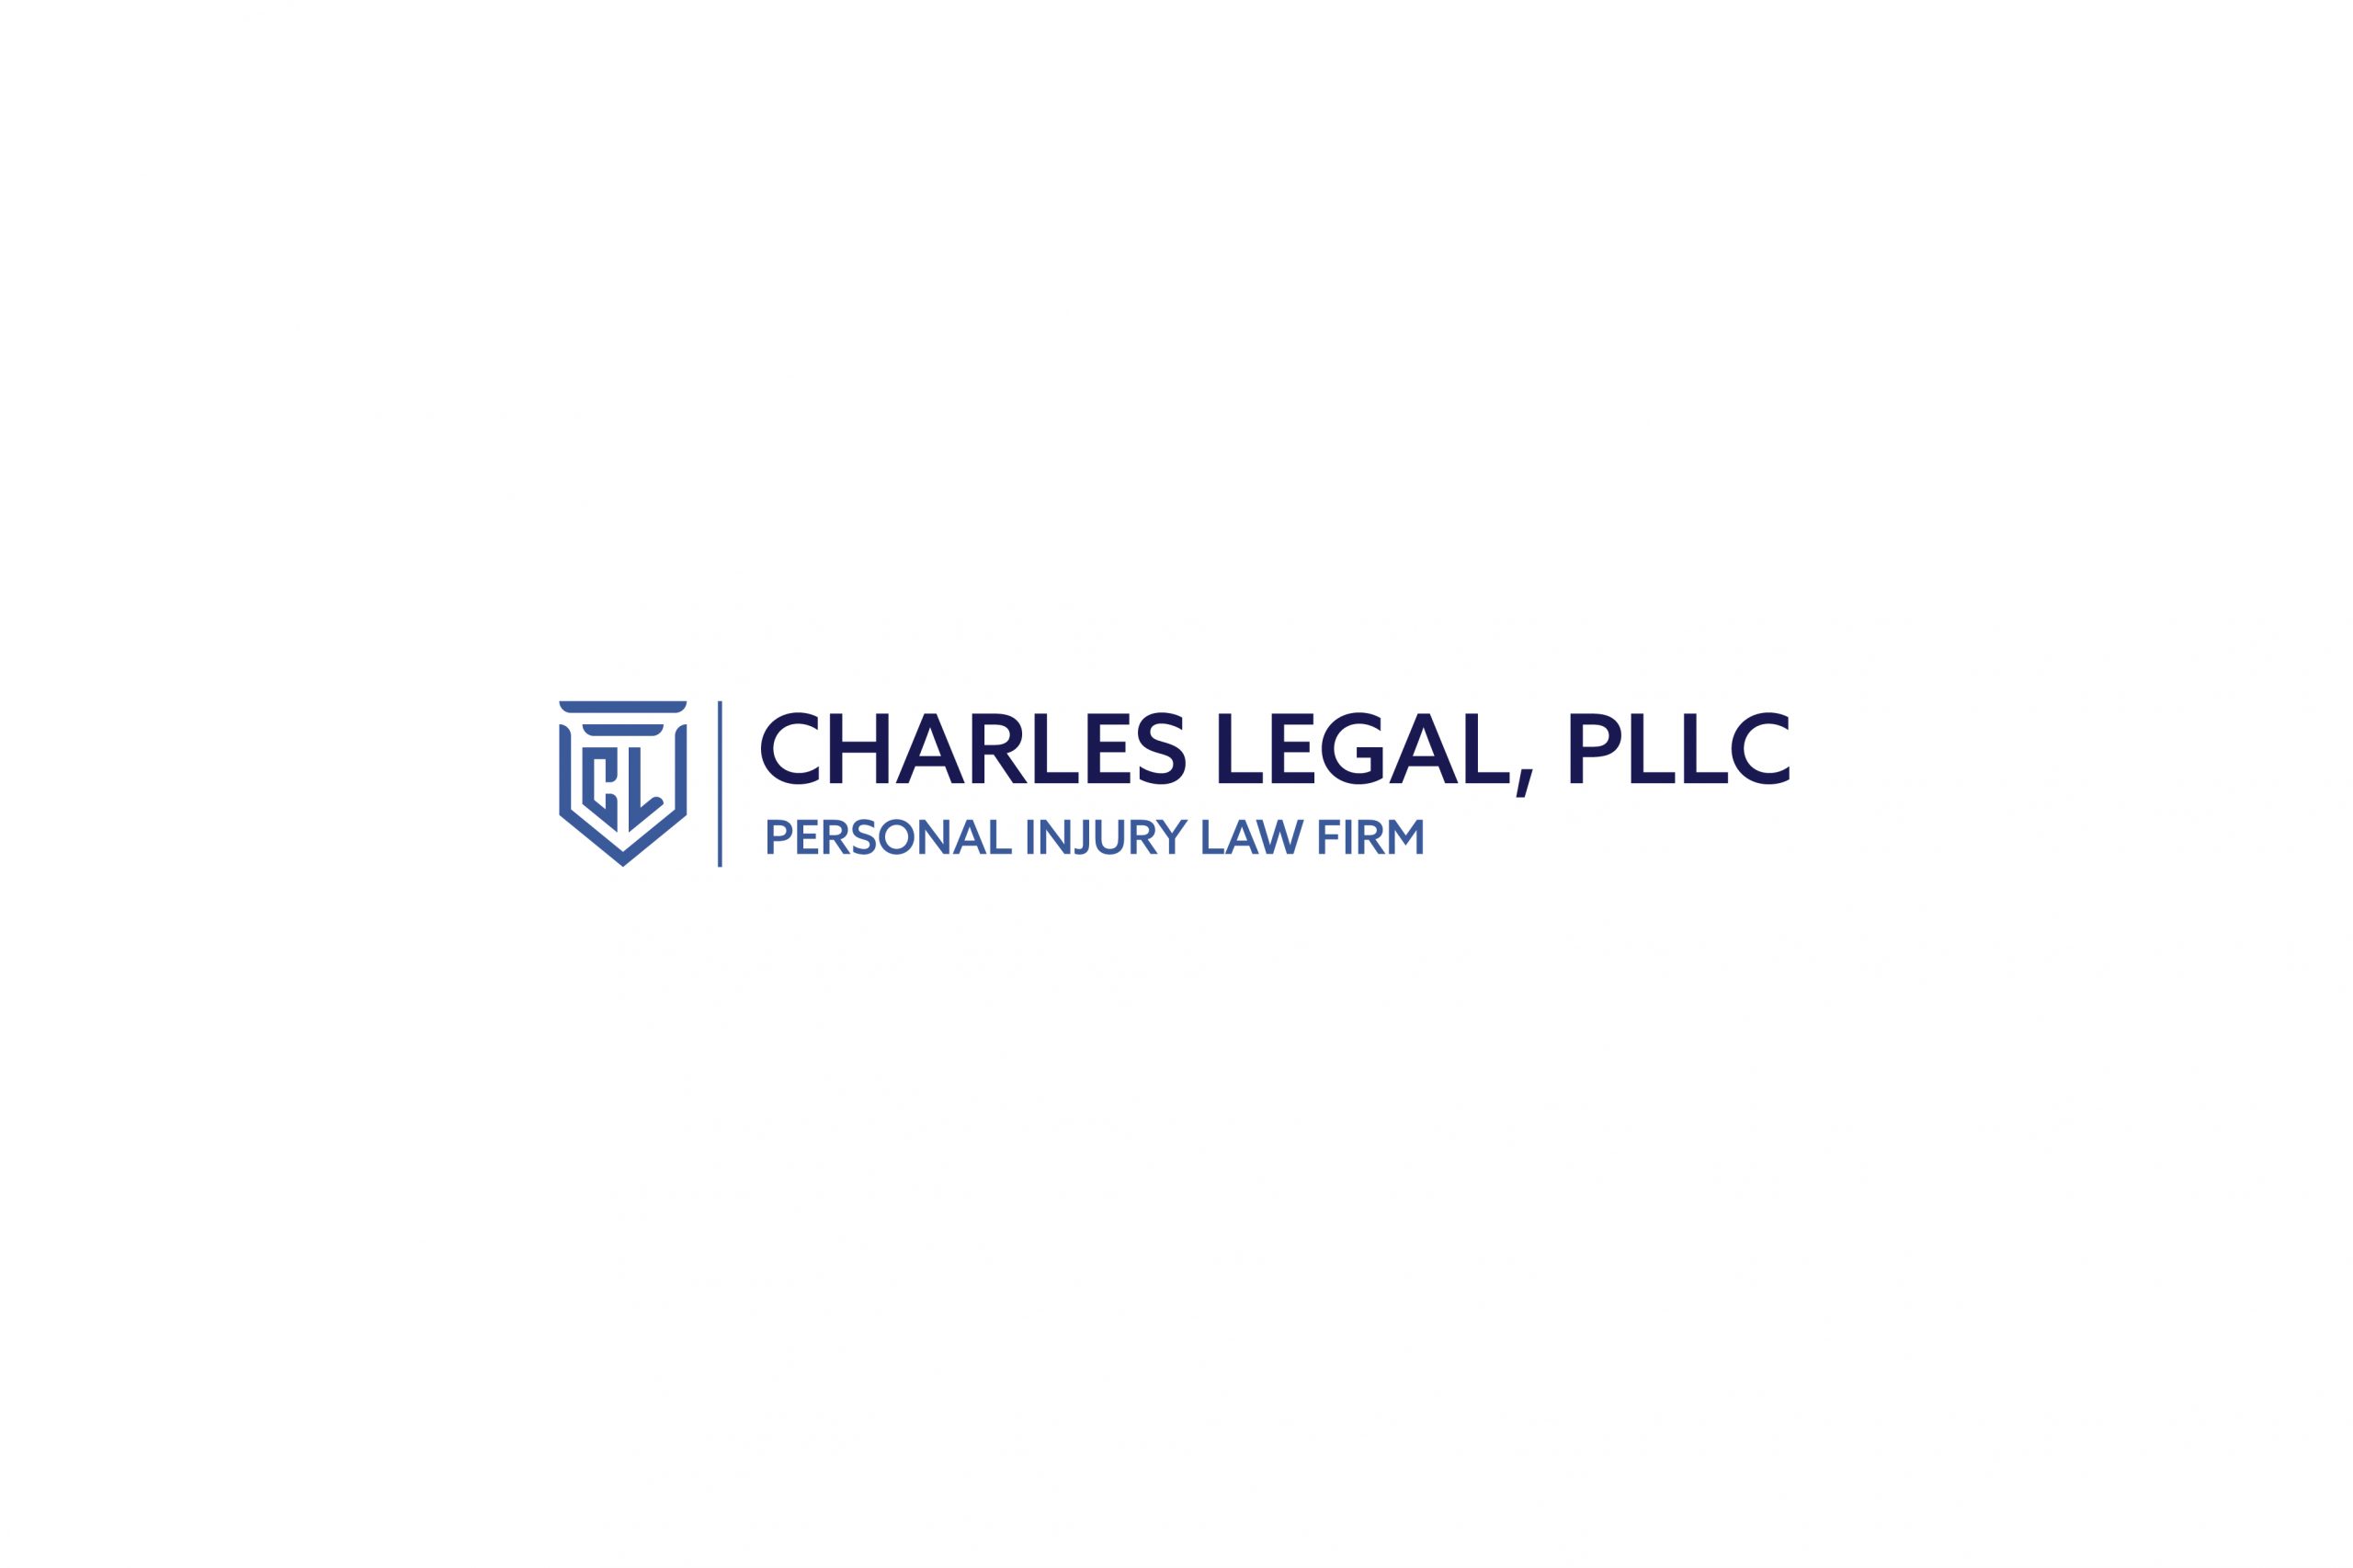 Charles_Legal__PLLC_rev.5_04 copy 5